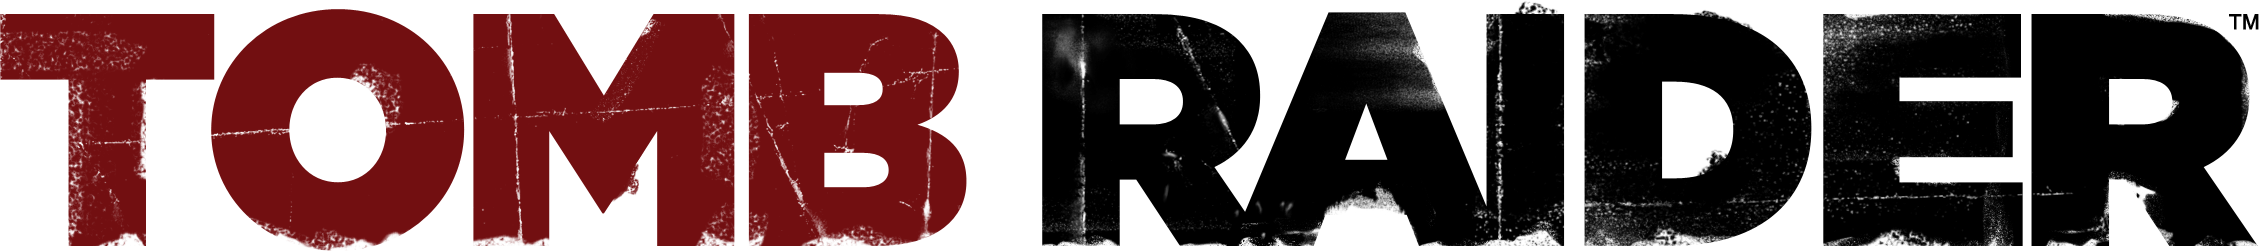 Tomb Raider Logo PNG Cutout